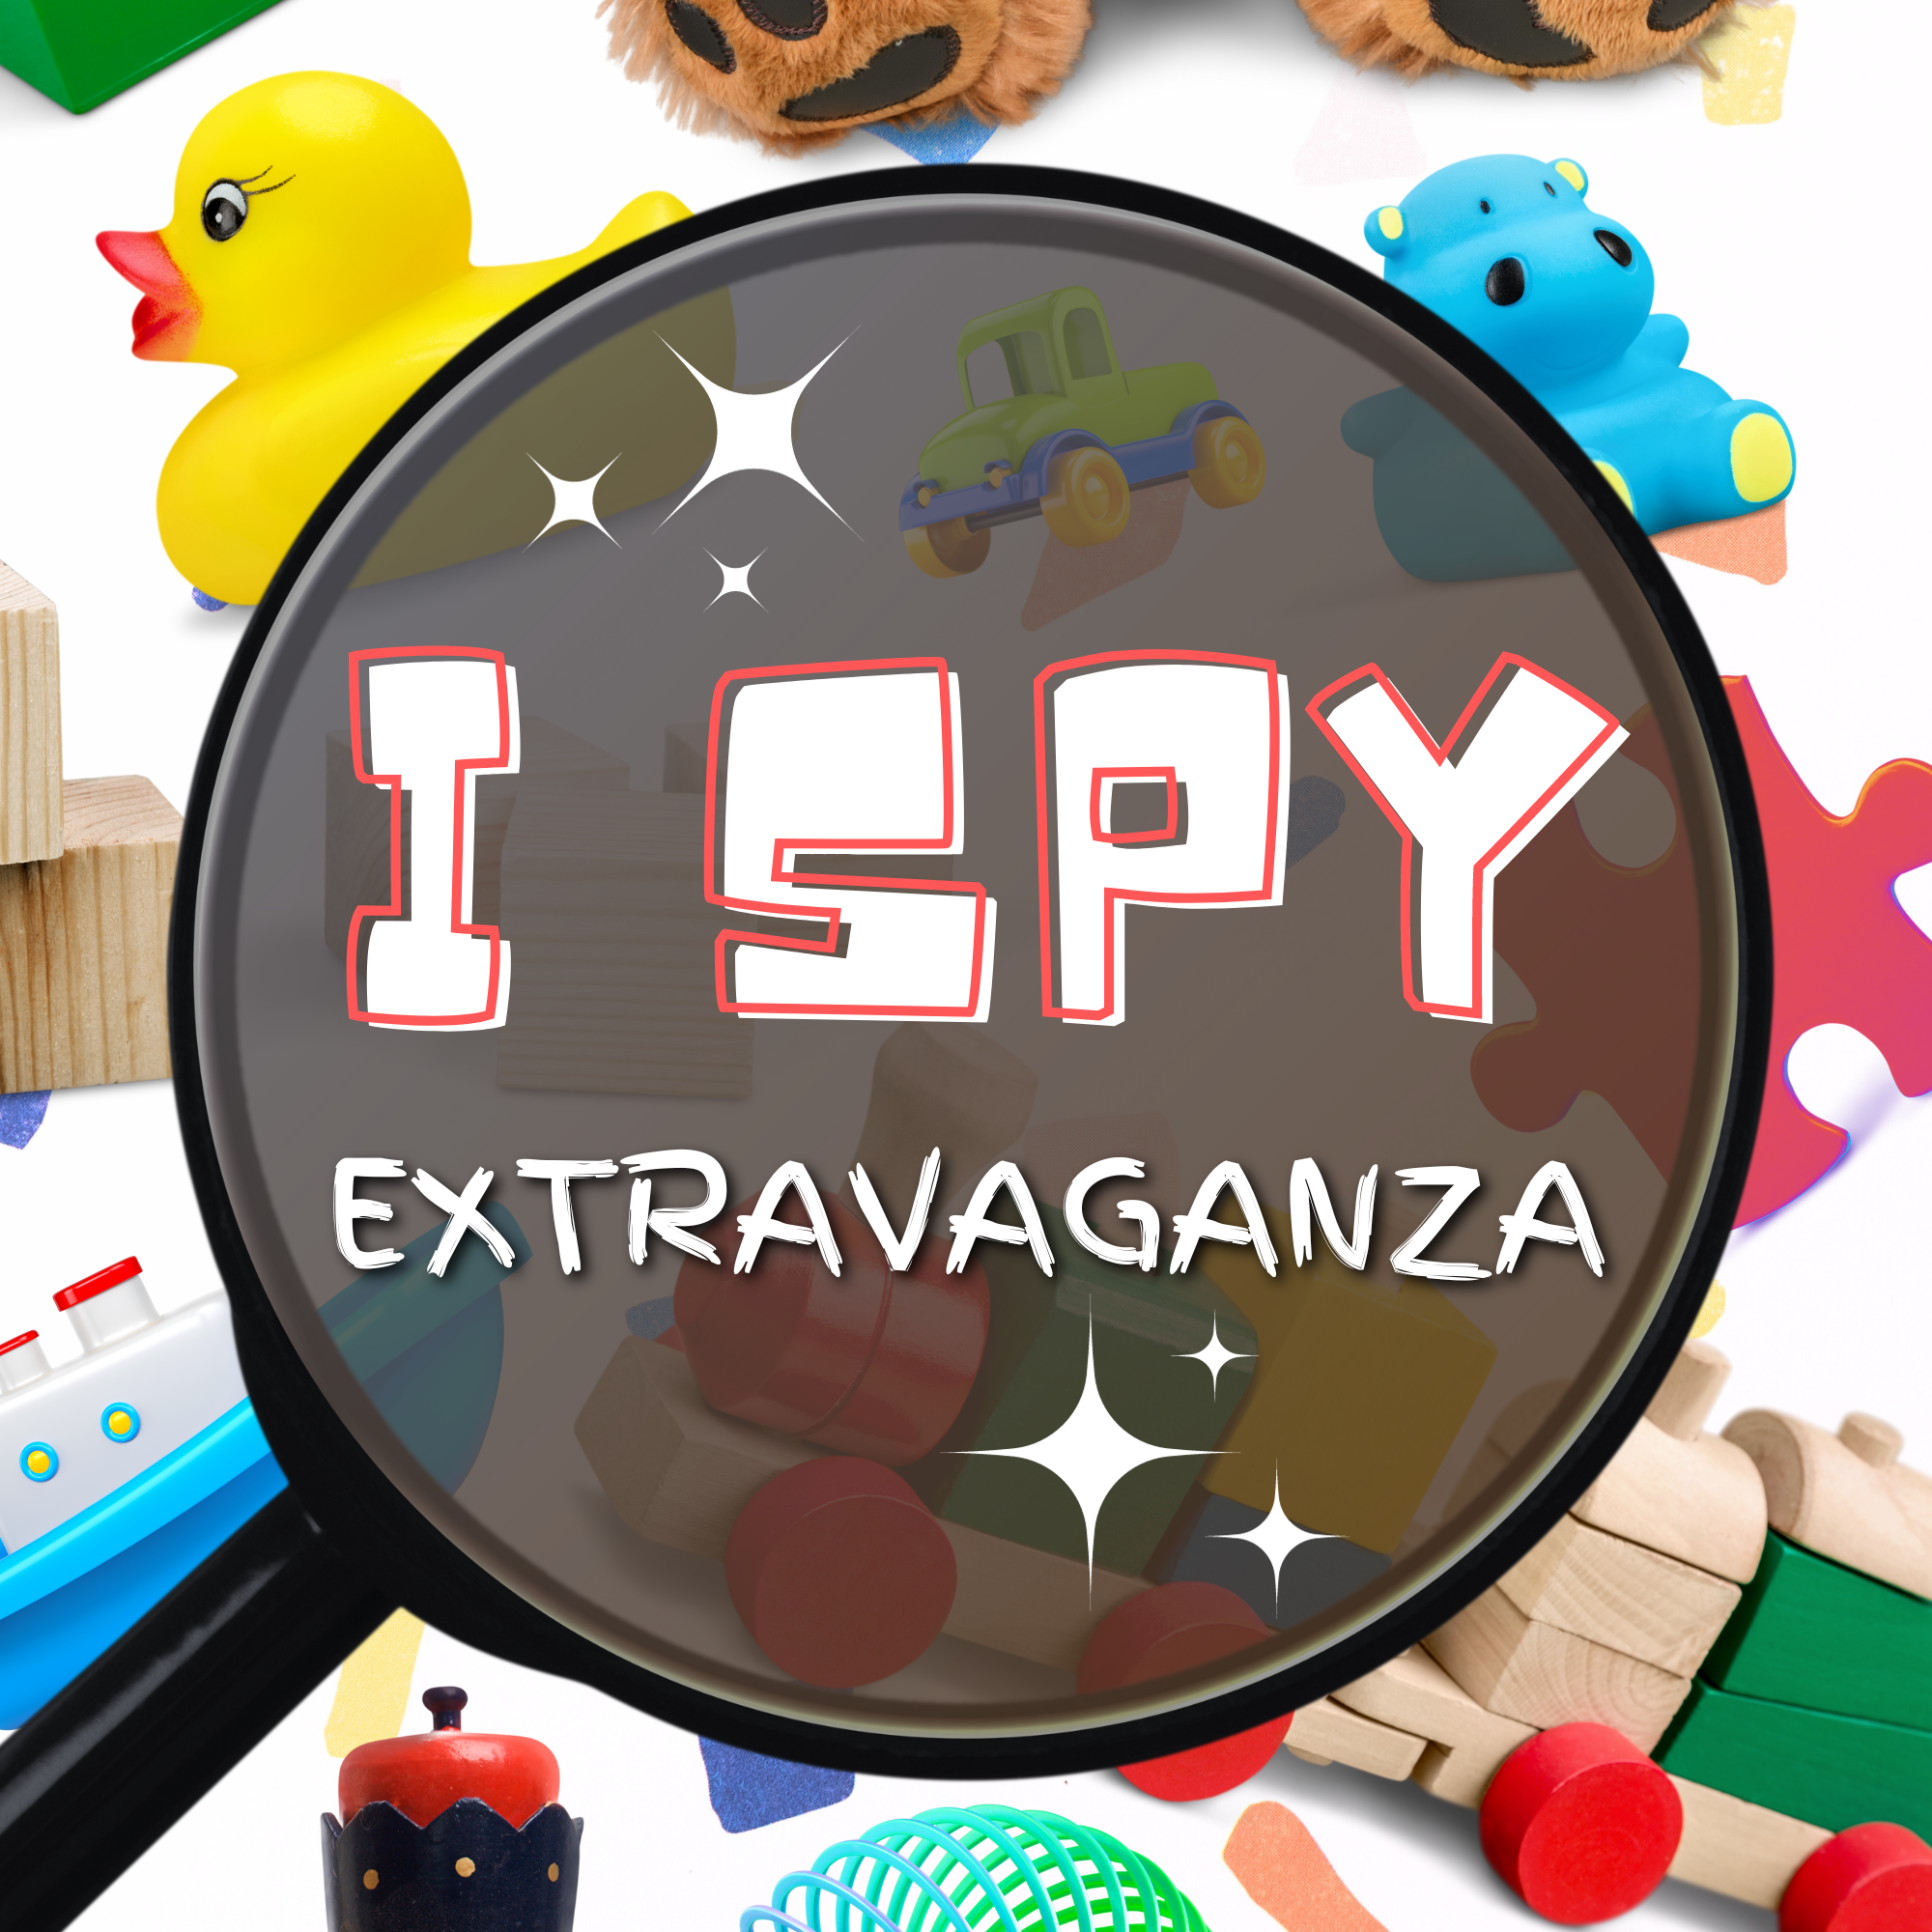 I Spy Extravaganza